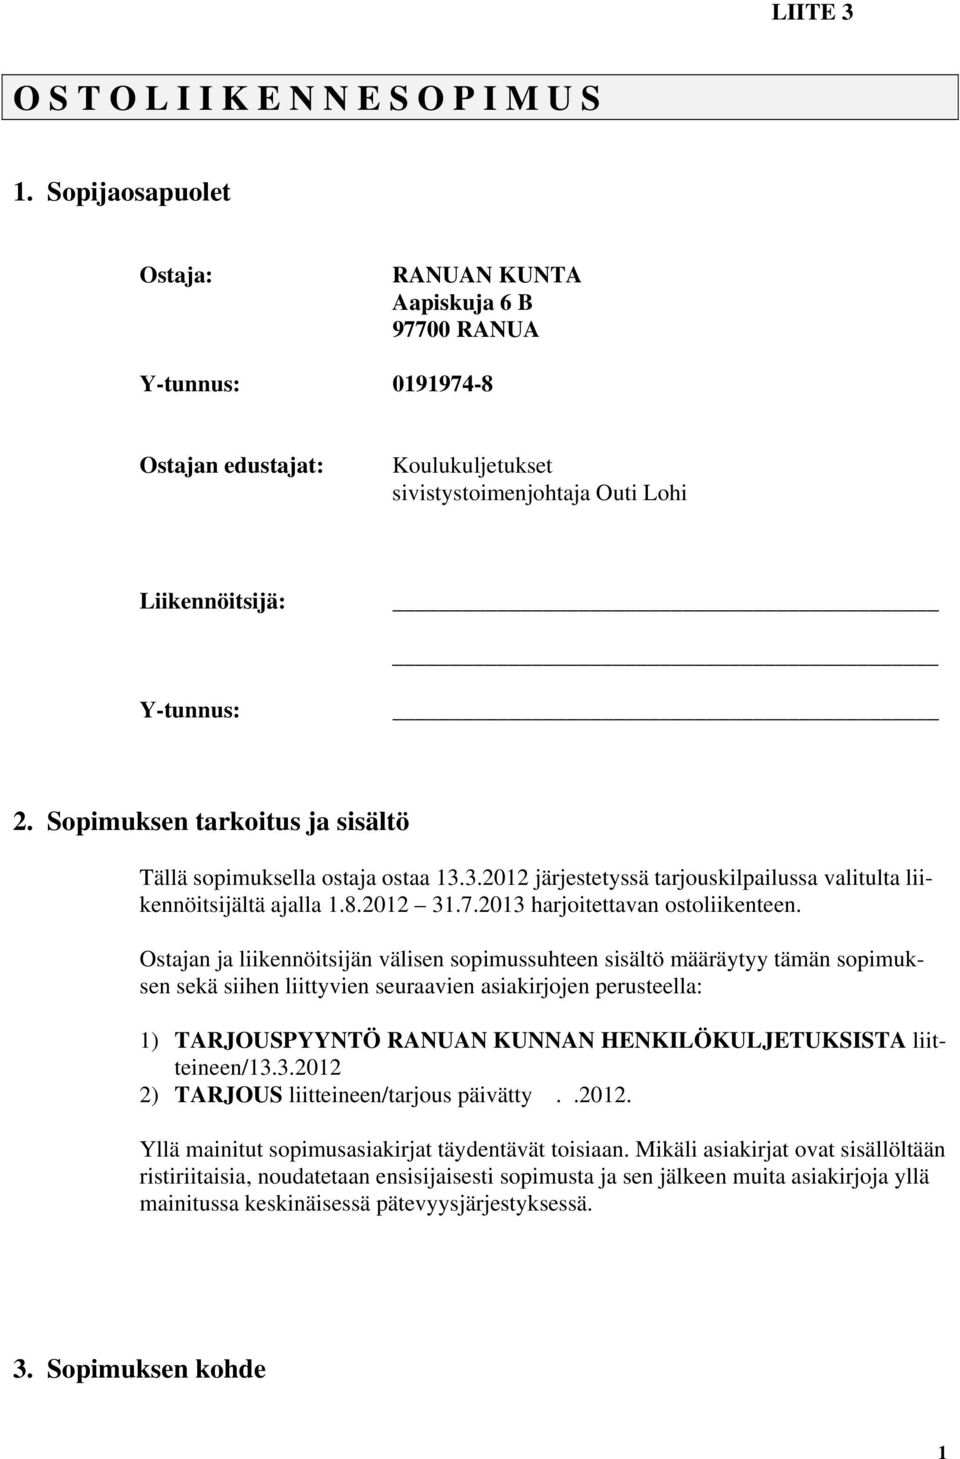 Sopimuksen tarkoitus ja sisältö Tällä sopimuksella ostaja ostaa 13.3.2012 järjestetyssä tarjouskilpailussa valitulta liikennöitsijältä ajalla 1.8.2012 31.7.2013 harjoitettavan ostoliikenteen.